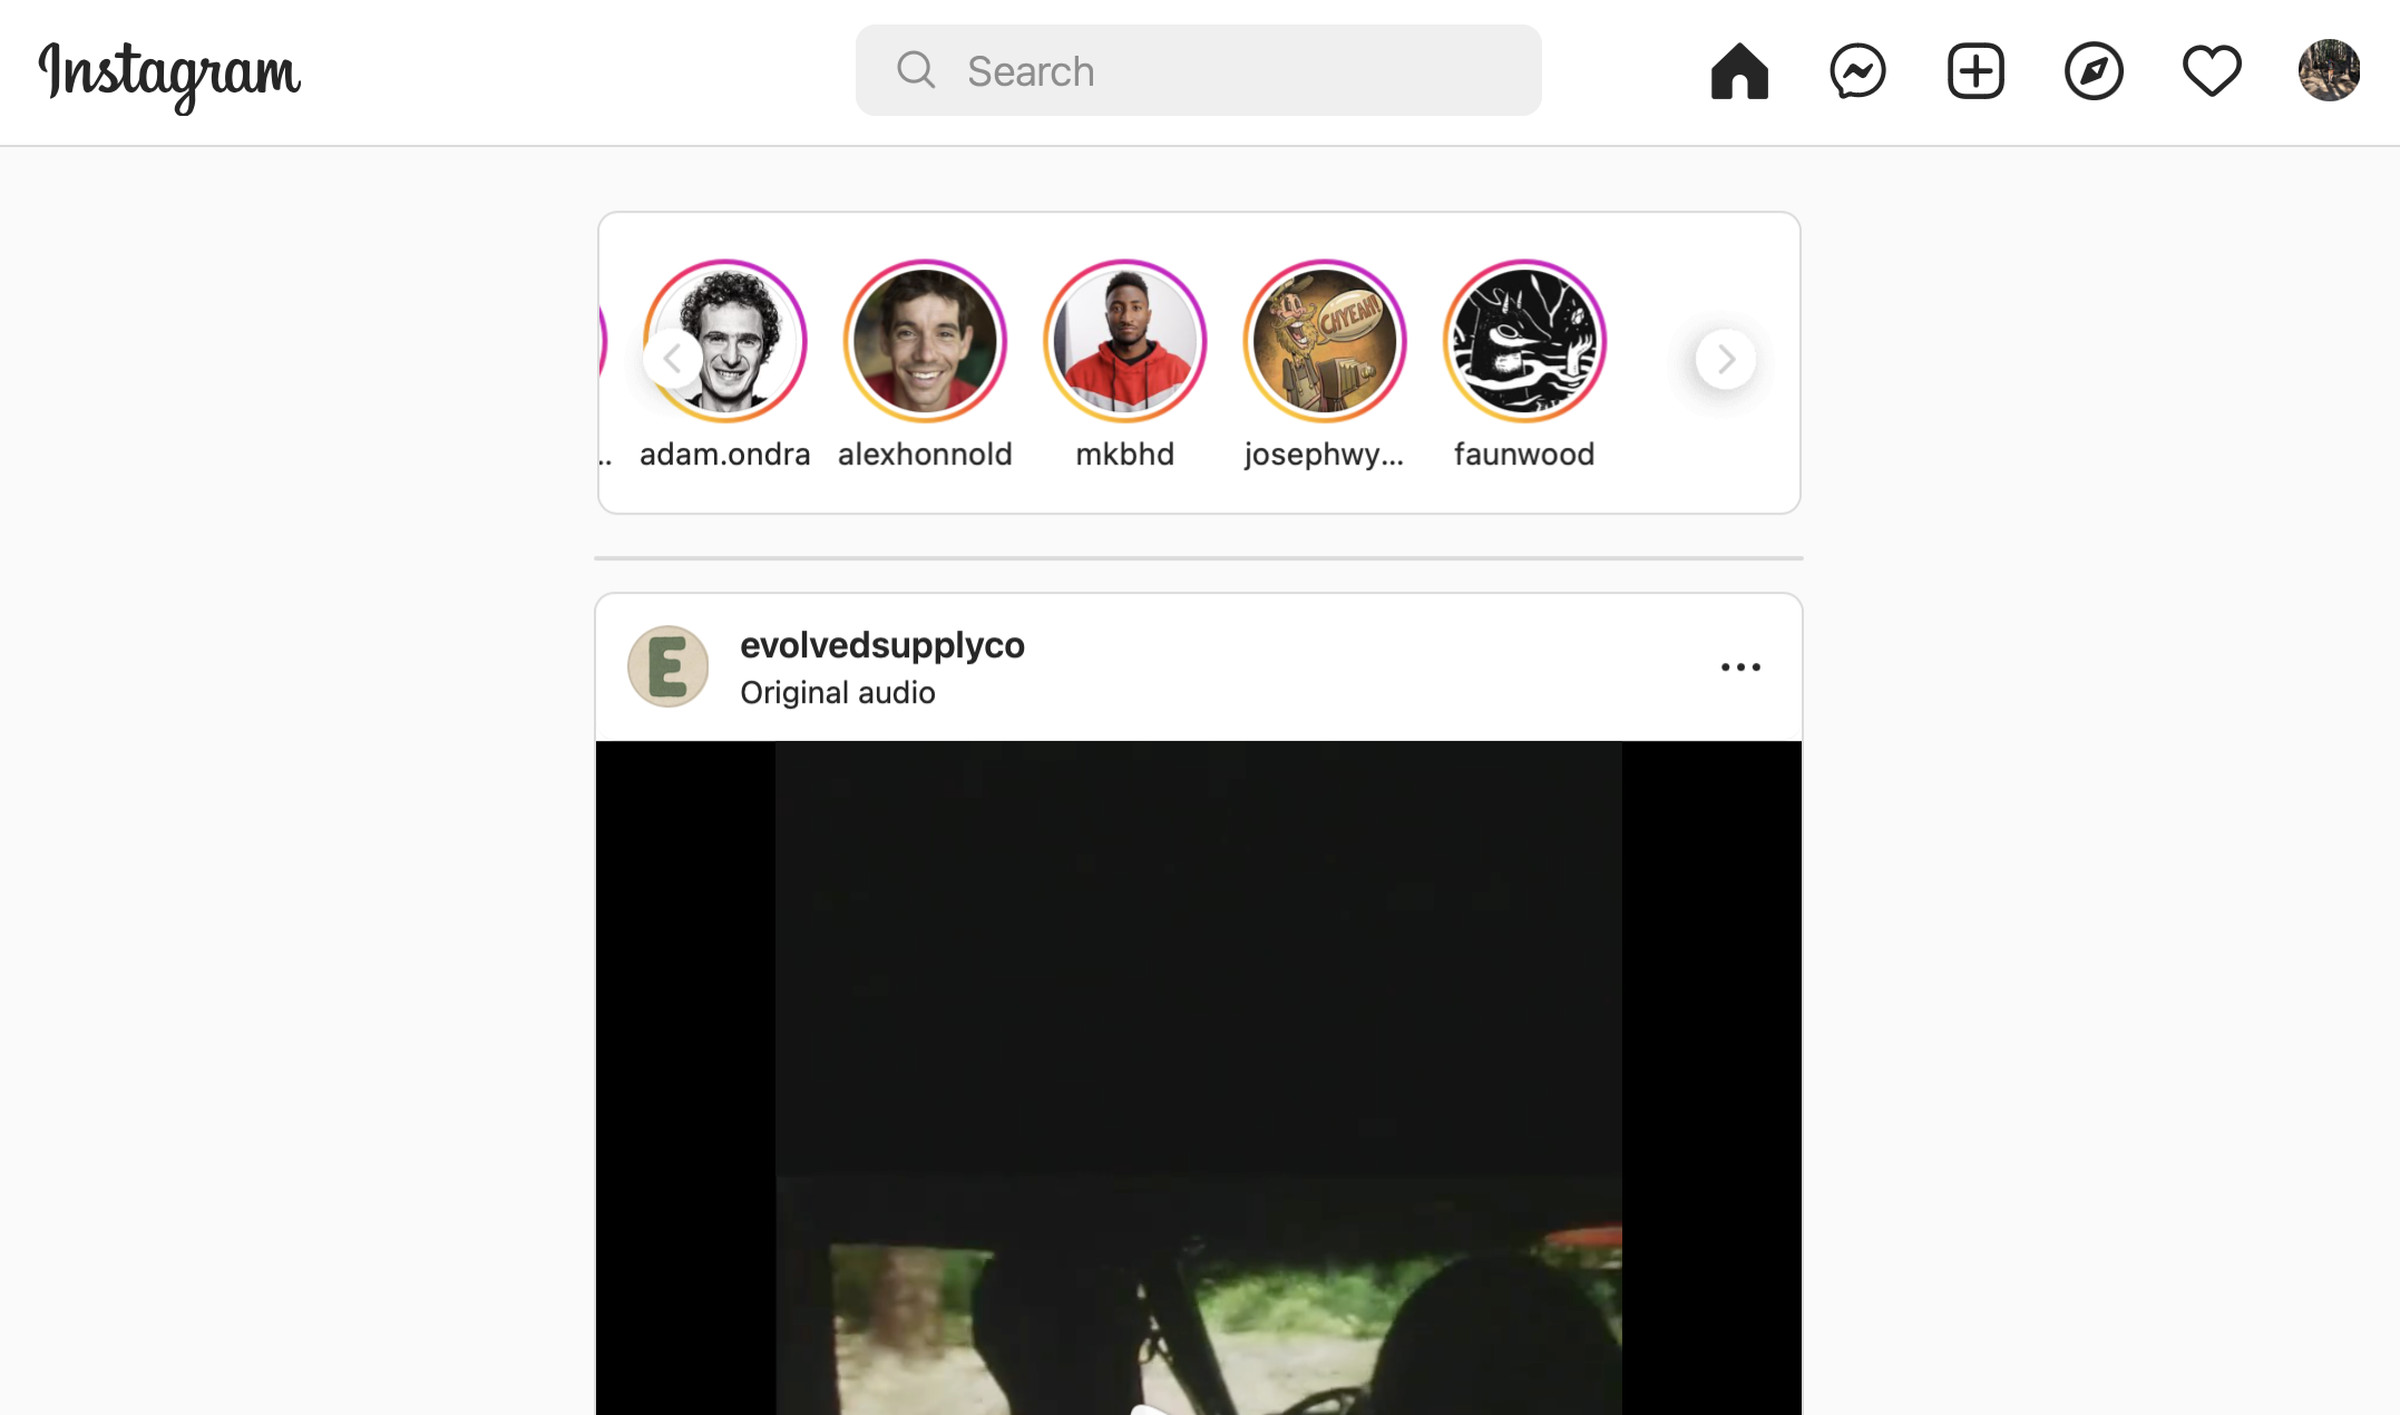 Tangkapan layar Instagram untuk web, dengan beranda, pesan, plus, kompas, dan tombol hati di bagian atas.